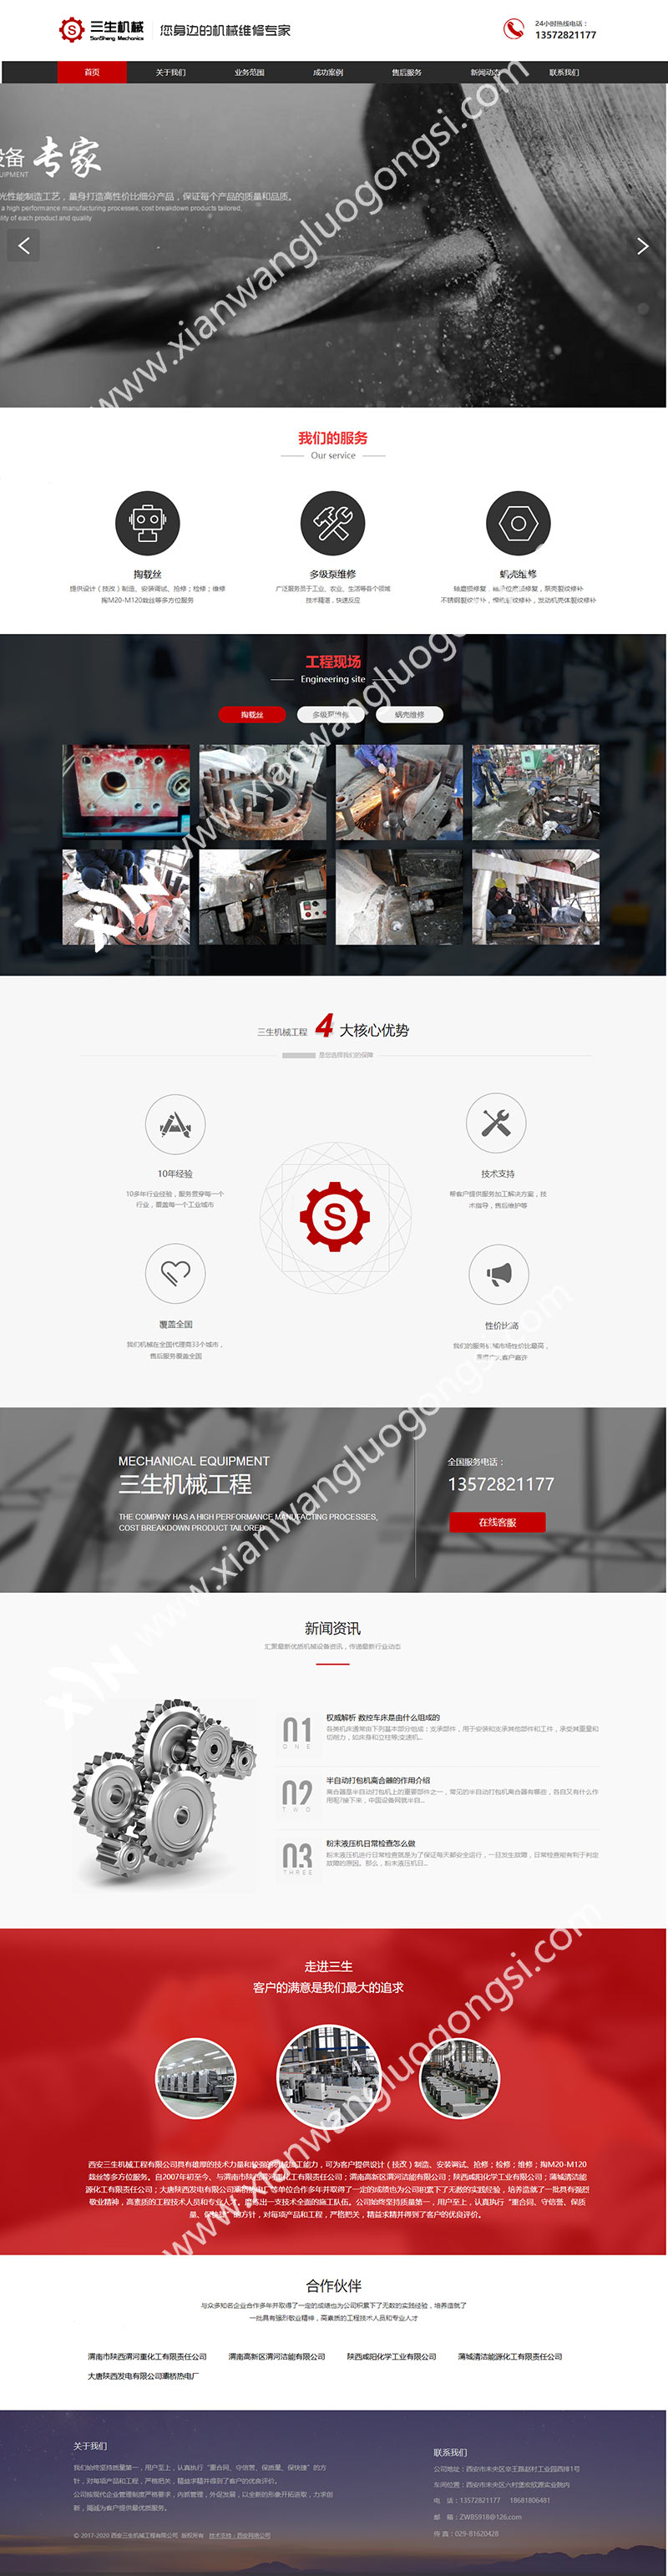 西安网络公司定制营销型网站